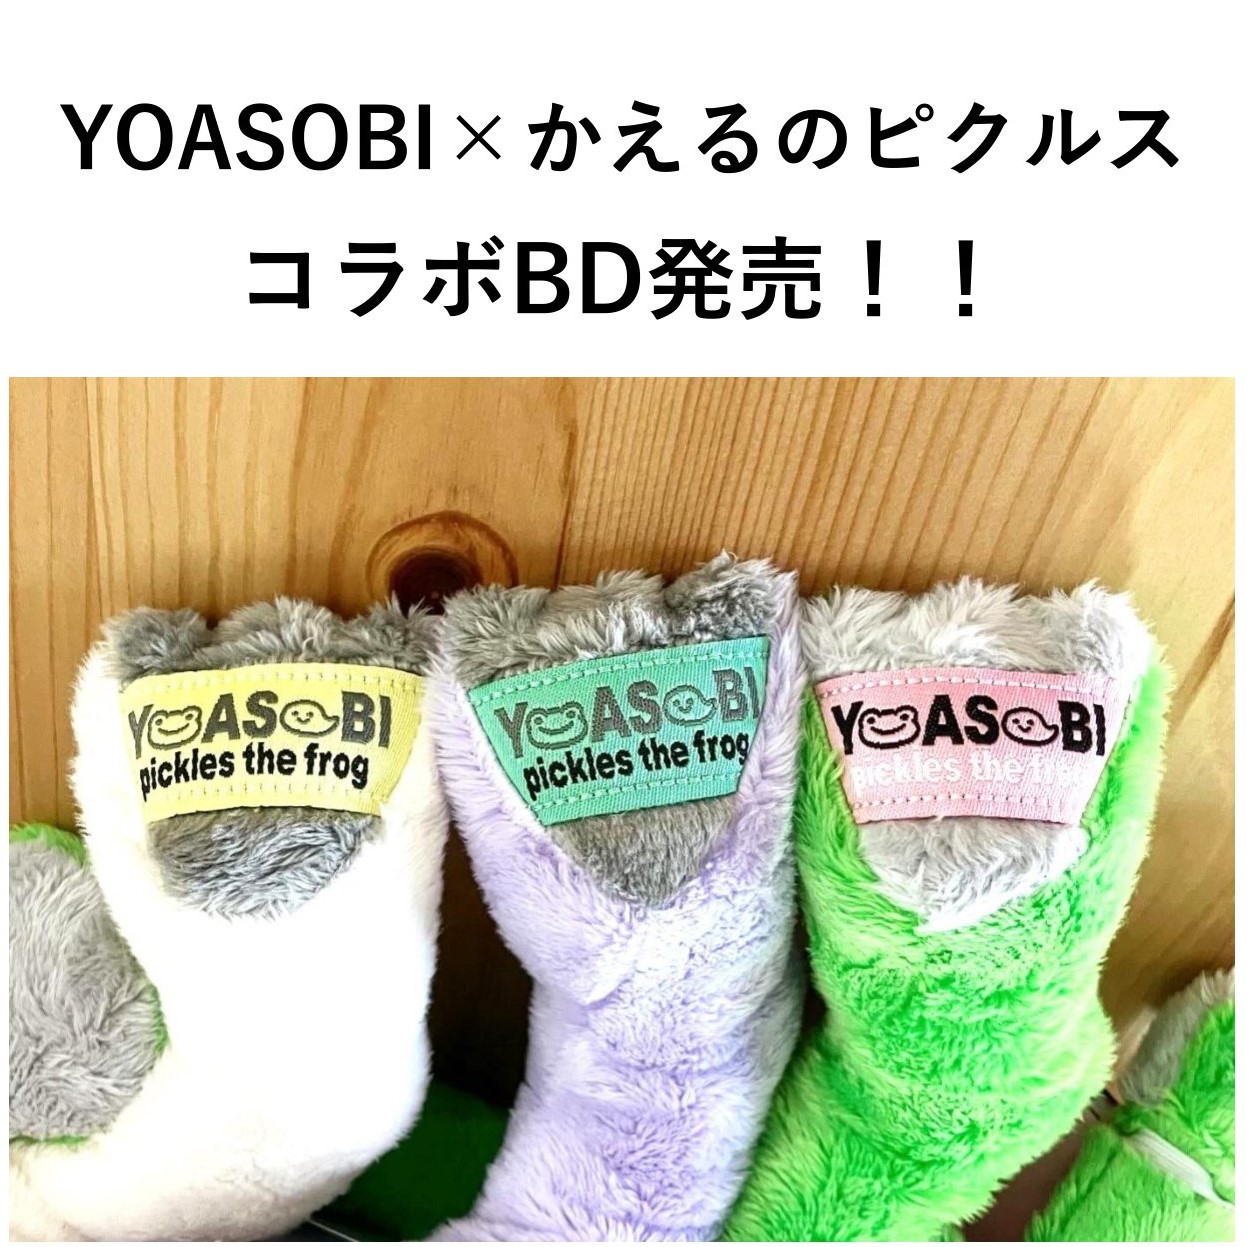 YOASOBI×かえるのピクルス コラボ ビーンドール発売決定！！】 | NEWSCAST